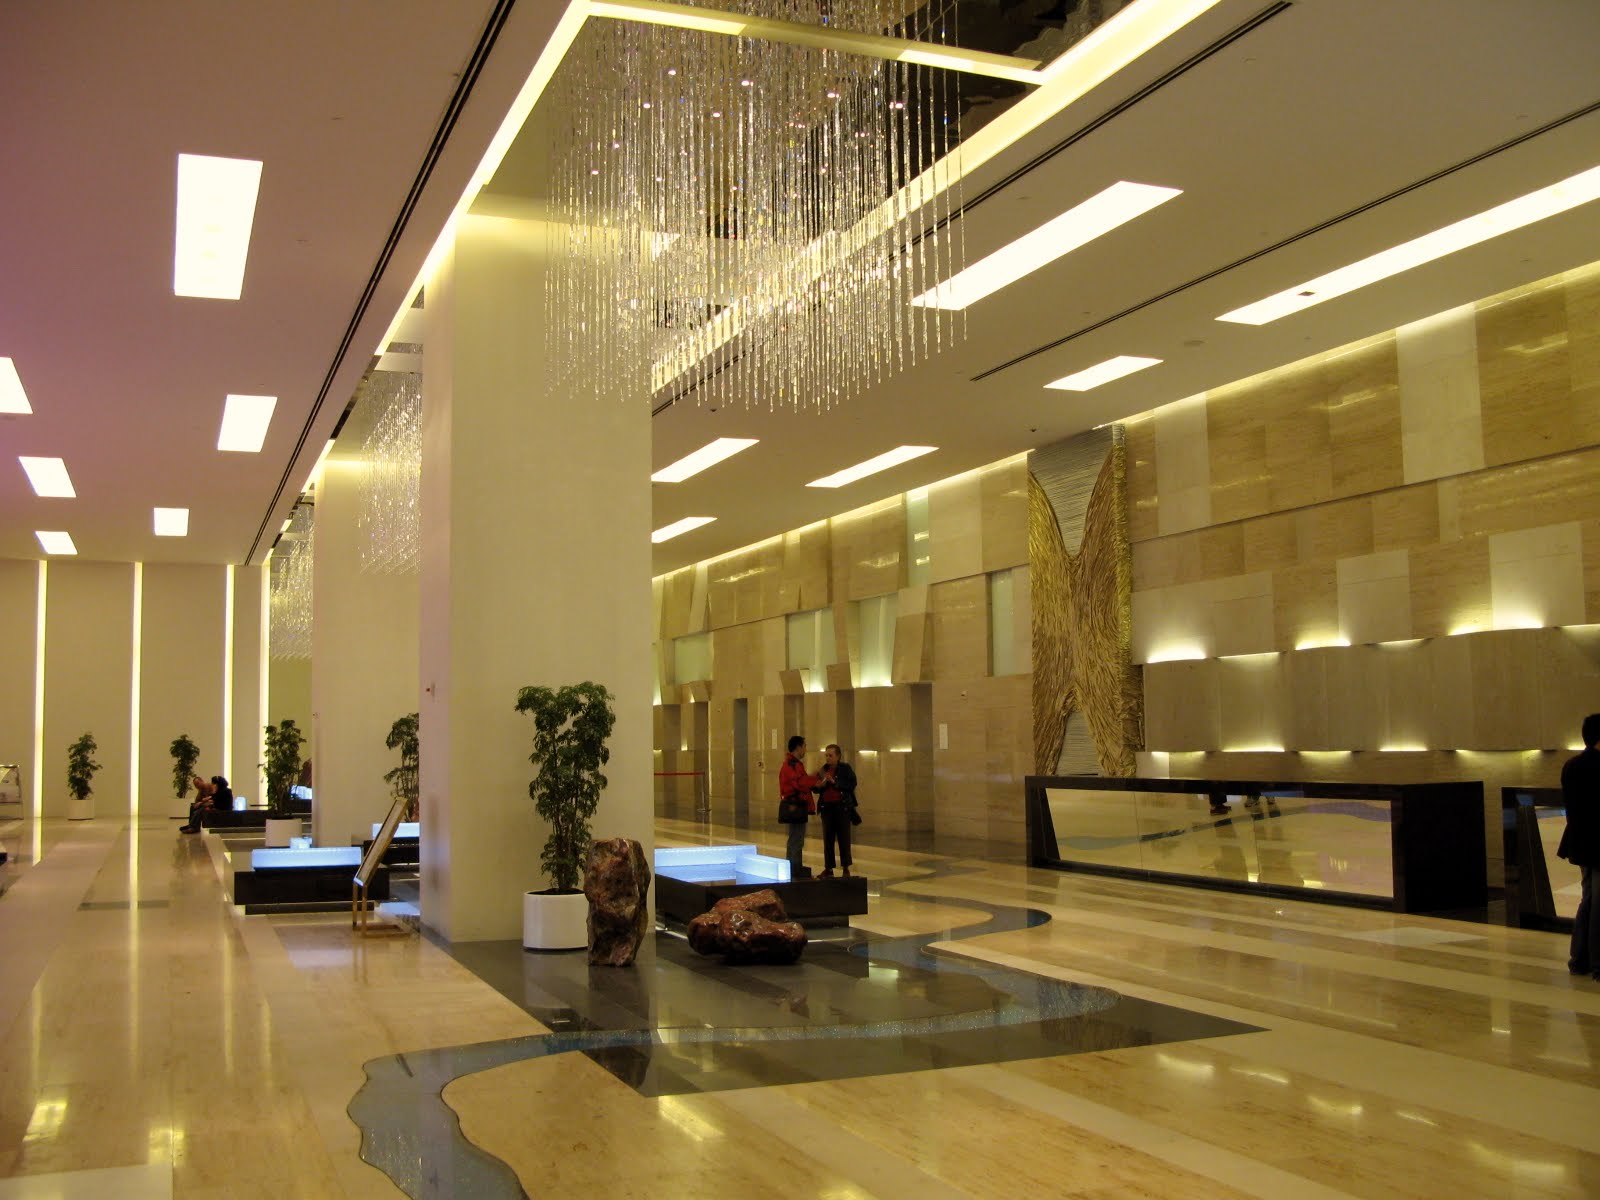 interior job ideas by Kokyat: Hotel Lobby